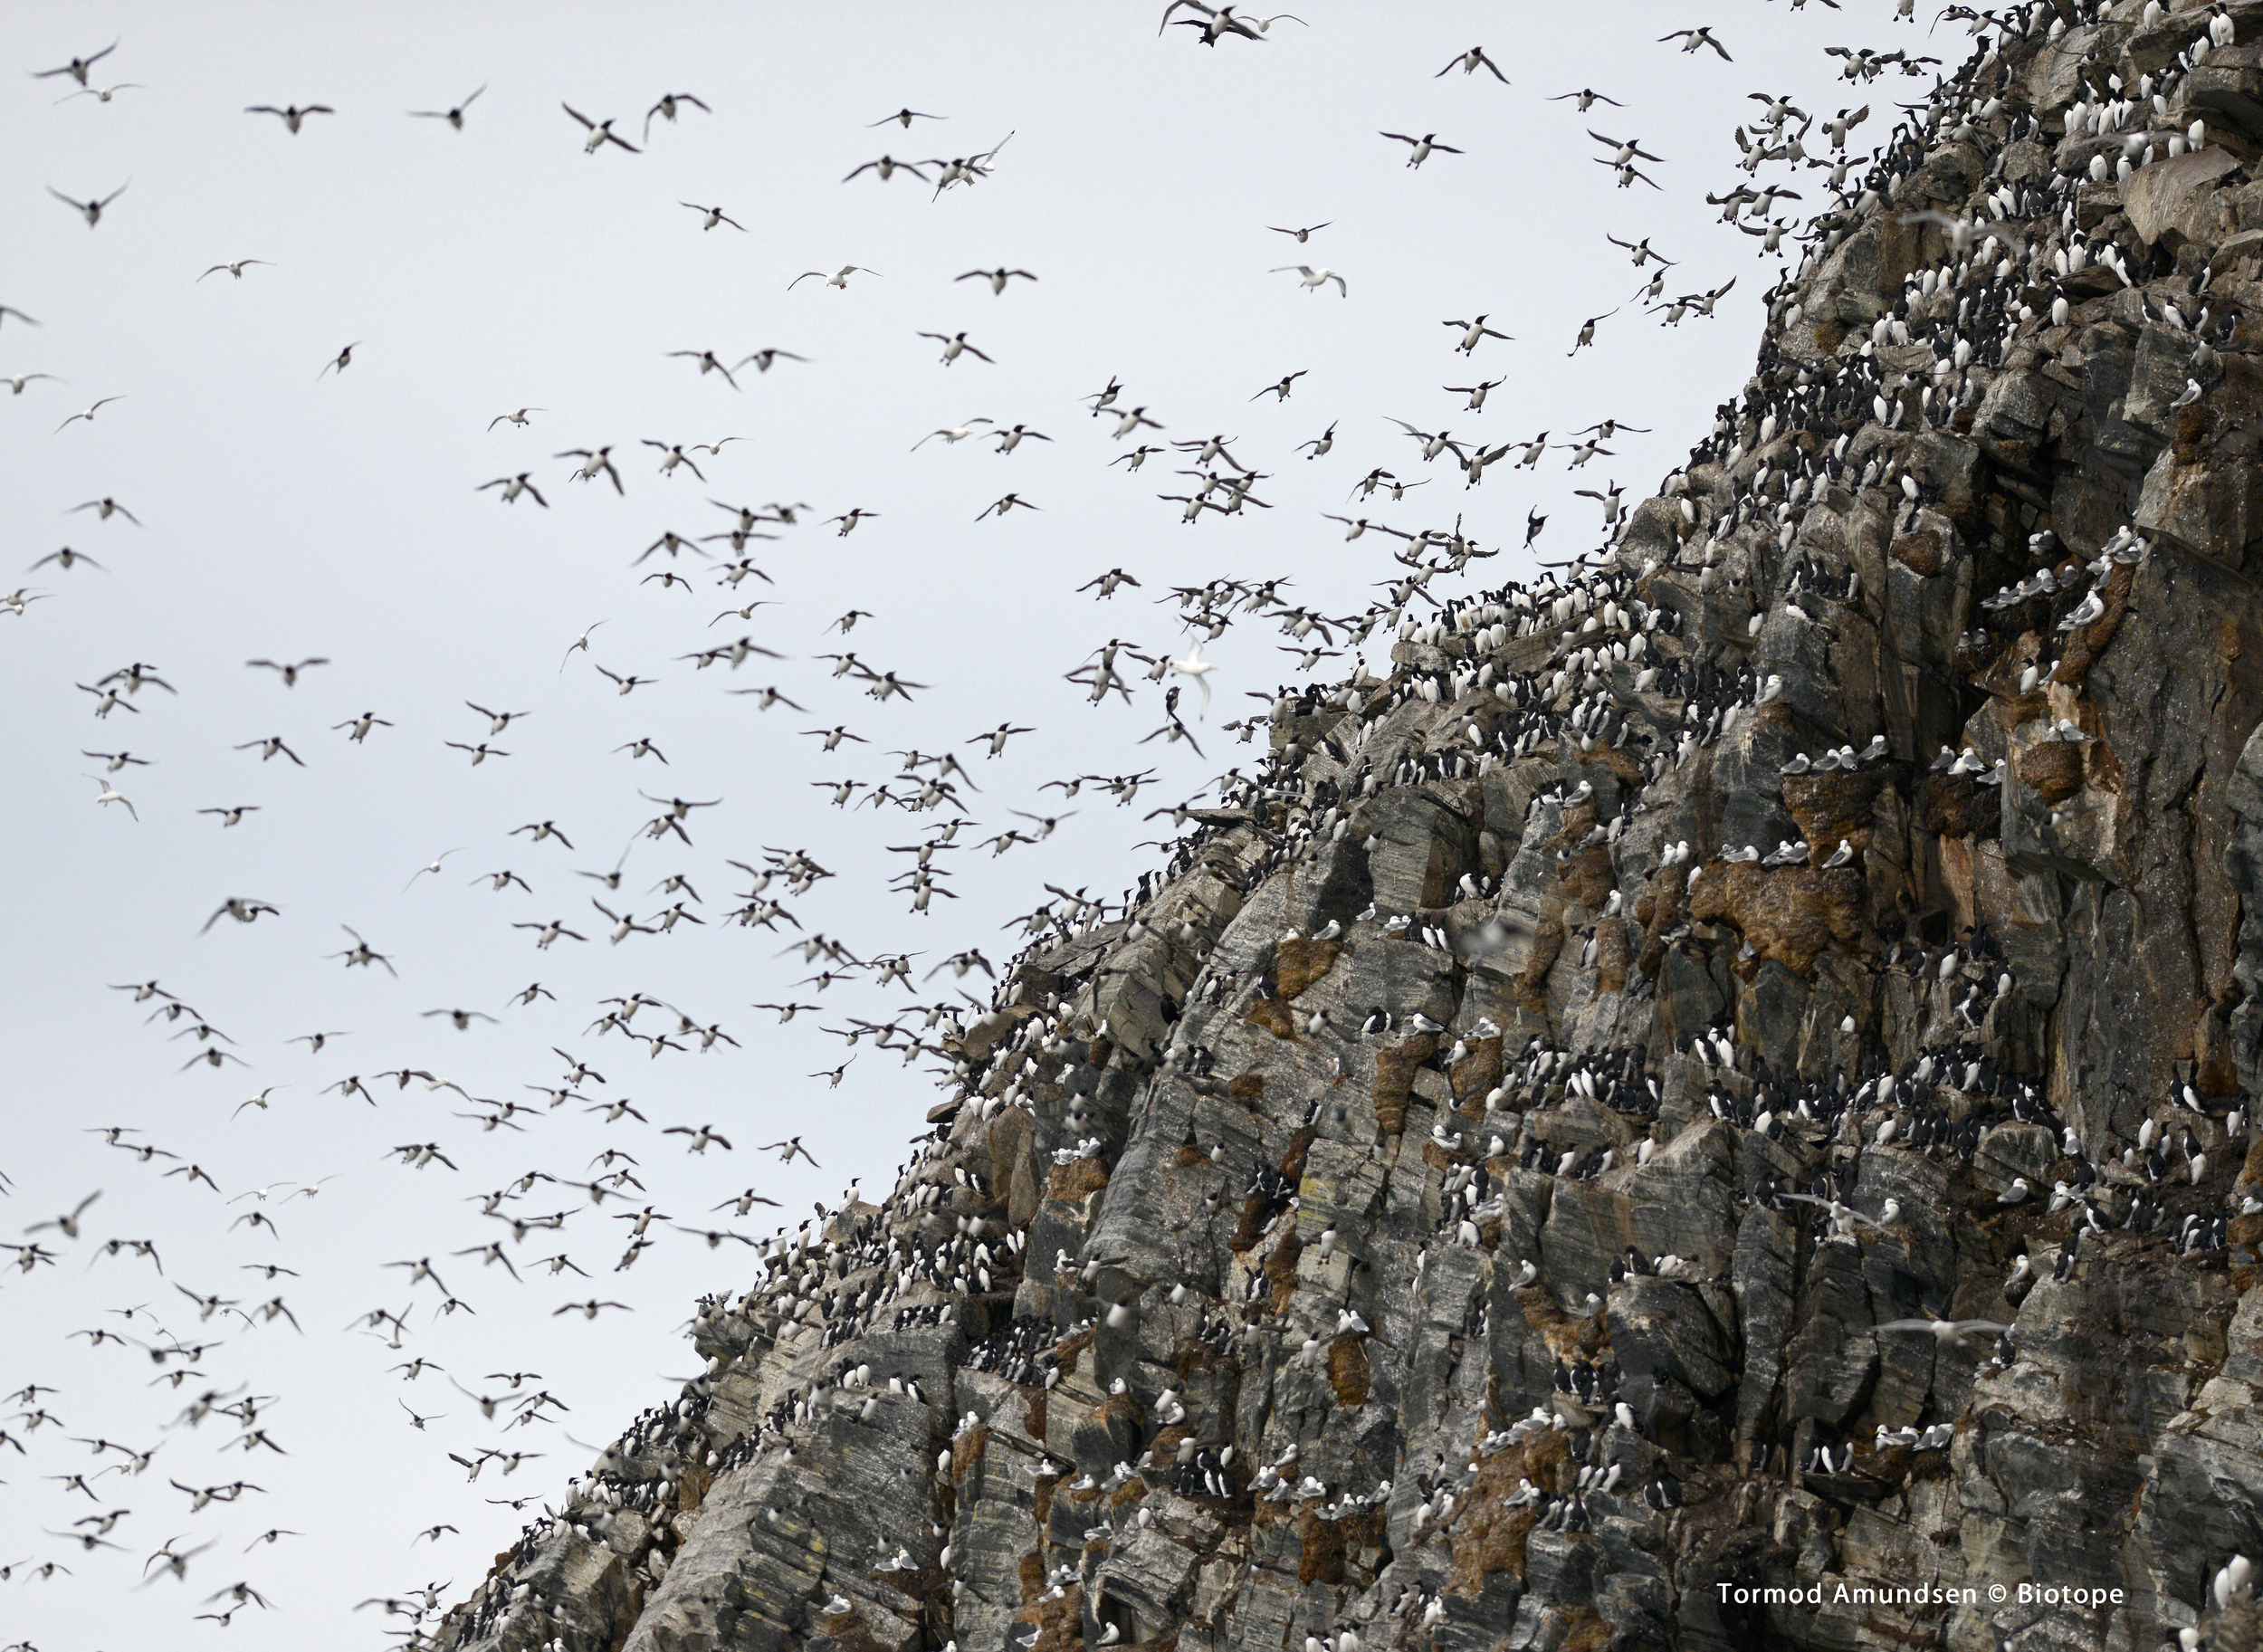 Hornøya incoming guillemots bird cliff march 2014 med res sign Amundsen Biotope.jpg